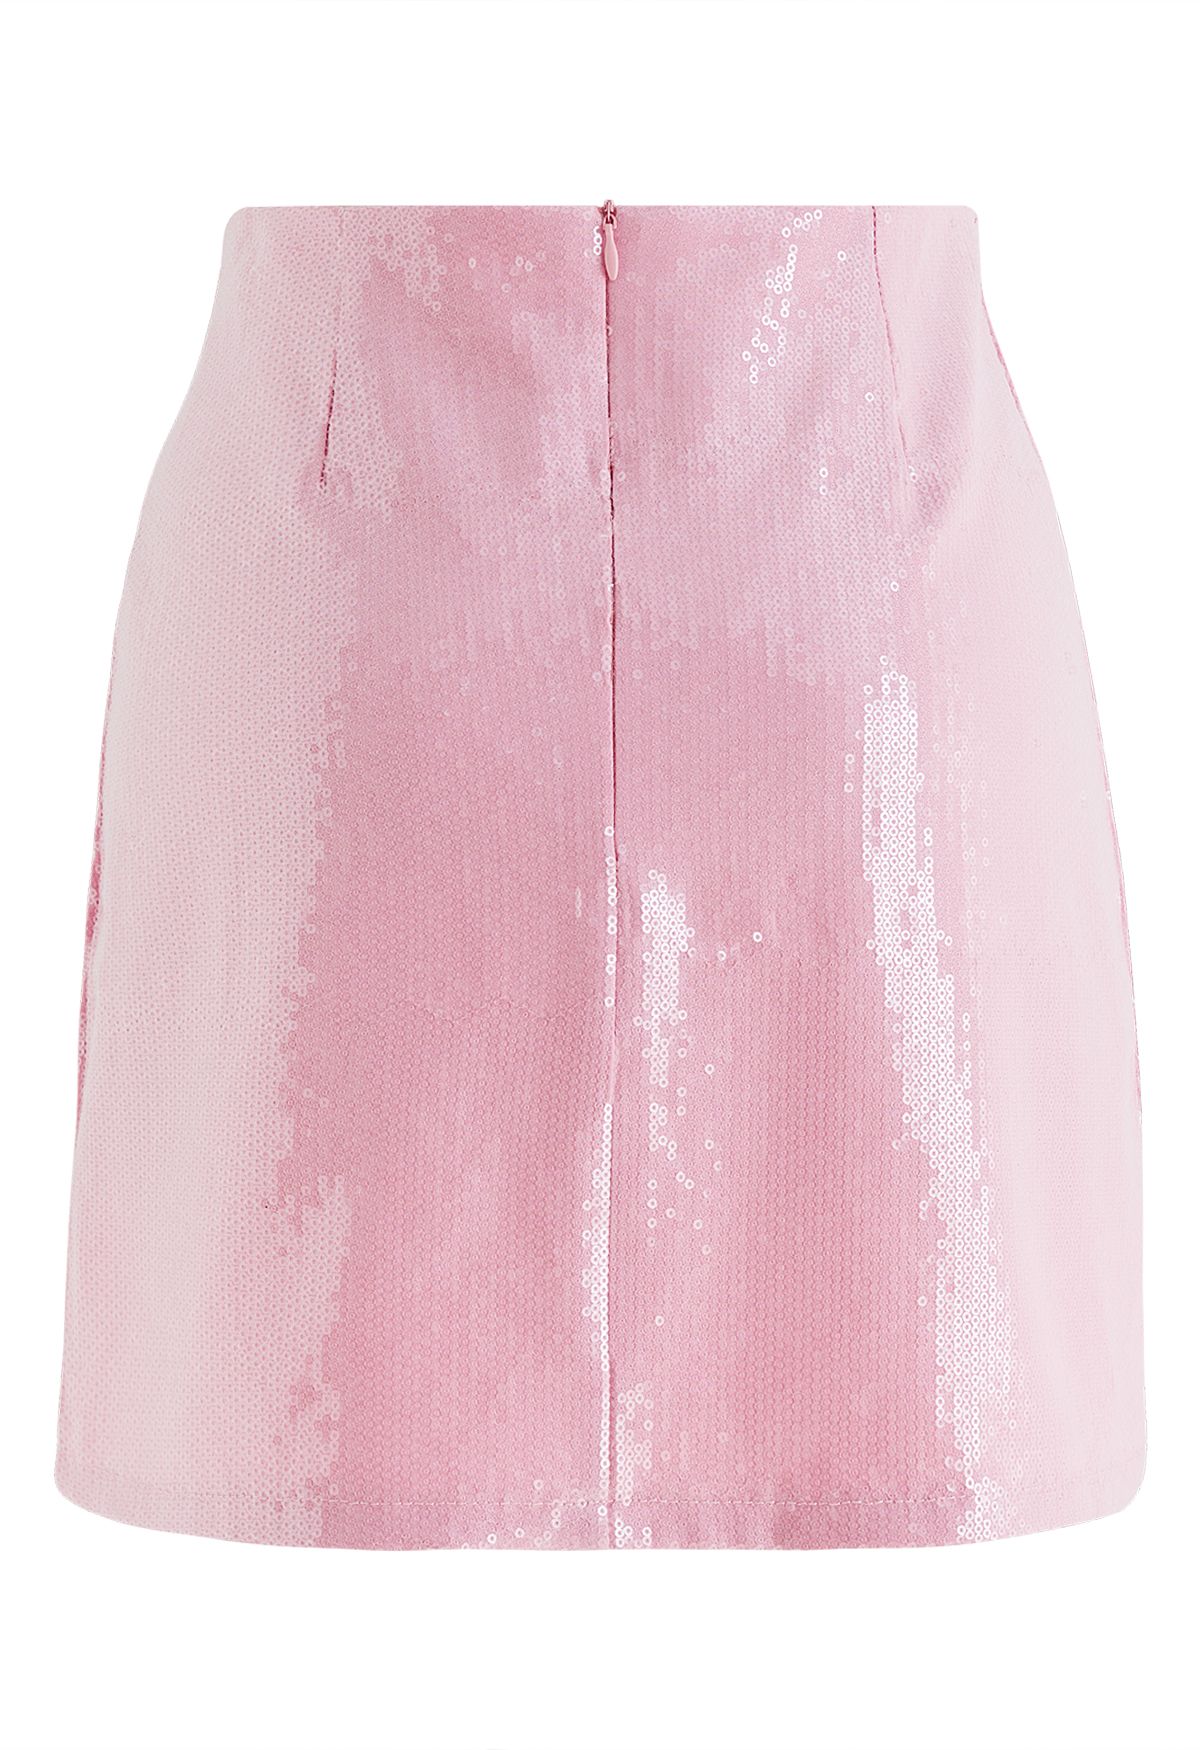 Minifalda de capullo adornada con lentejuelas centelleantes en rosa